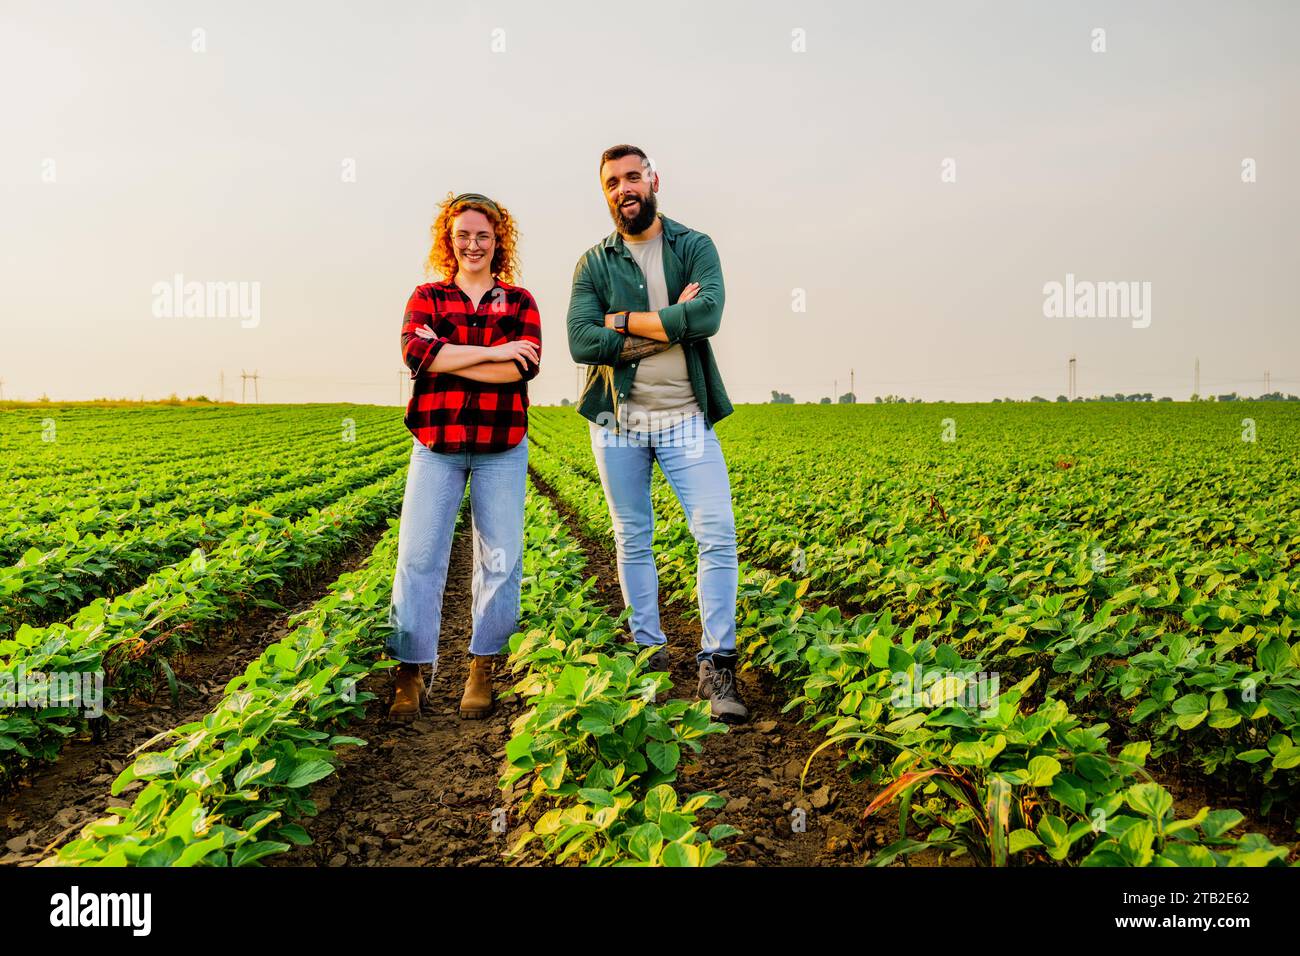 Landwirtschaftliche Familienberufe. Mann und Frau bauen Sojabohnen an. Sie sind mit dem guten Fortschritt der Pflanzen zufrieden. Stockfoto